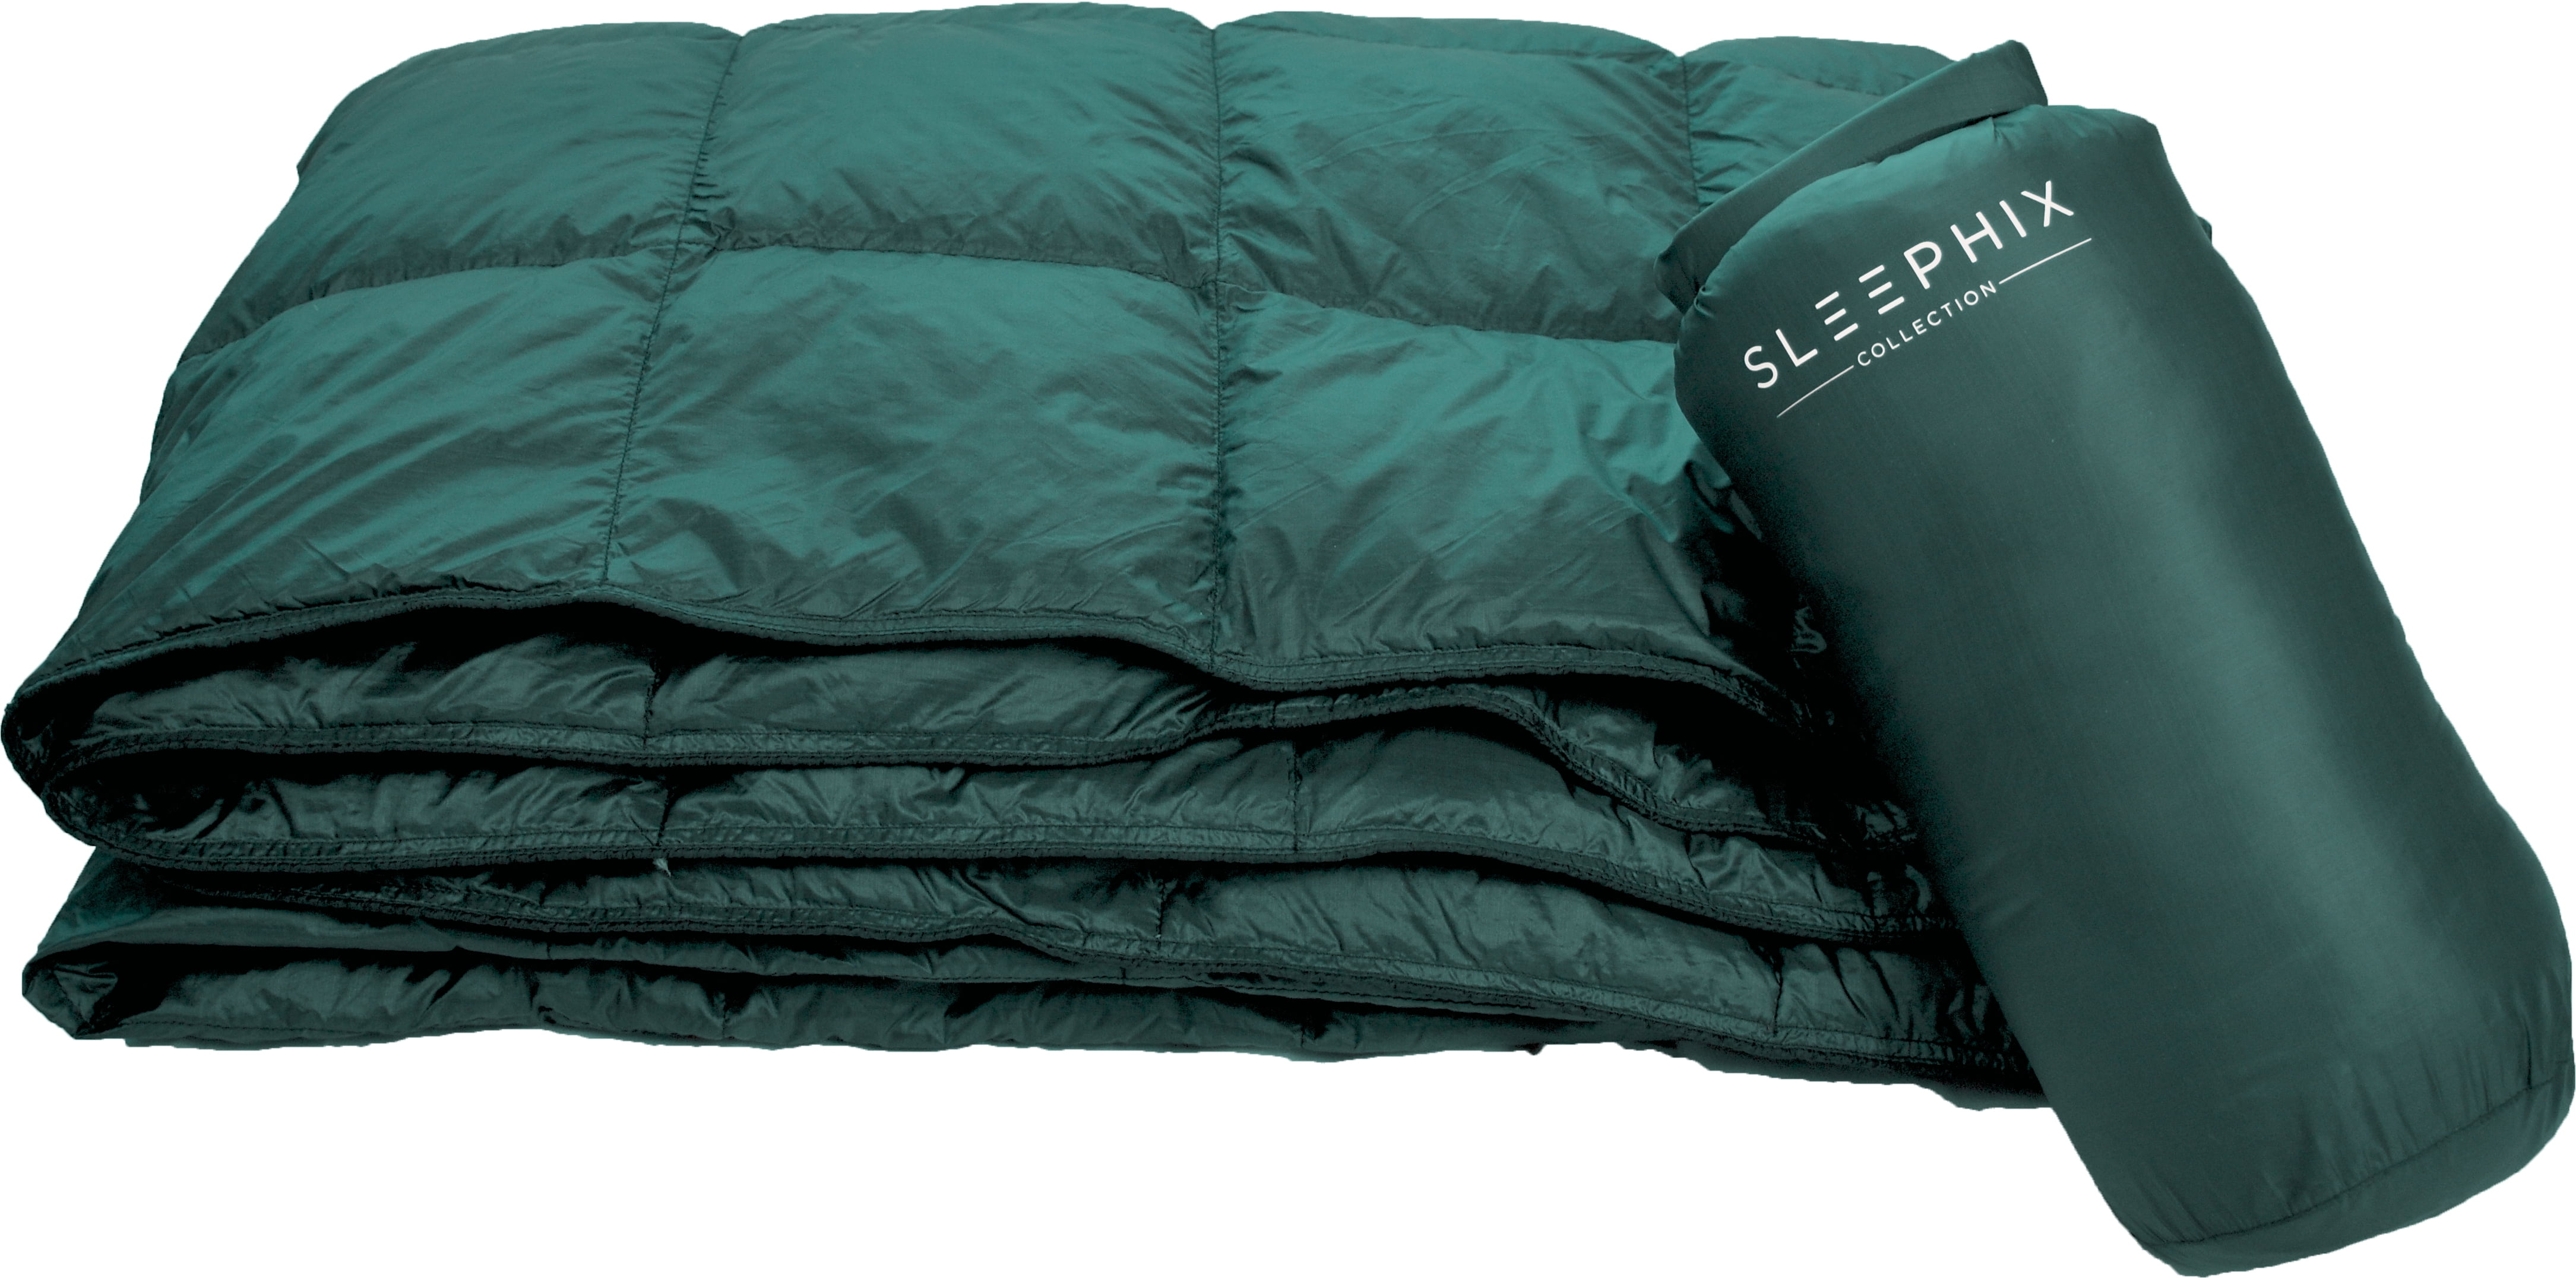 SLEEPHIX Daunen Outdoor Camping Decke Füllkraft: 650 Ideal für Camping Terrasse und Heimnutzung Backpacking Segeln Flugzeugreisen Wasserabweisend Nylon Hülle mit Daunenfüllung